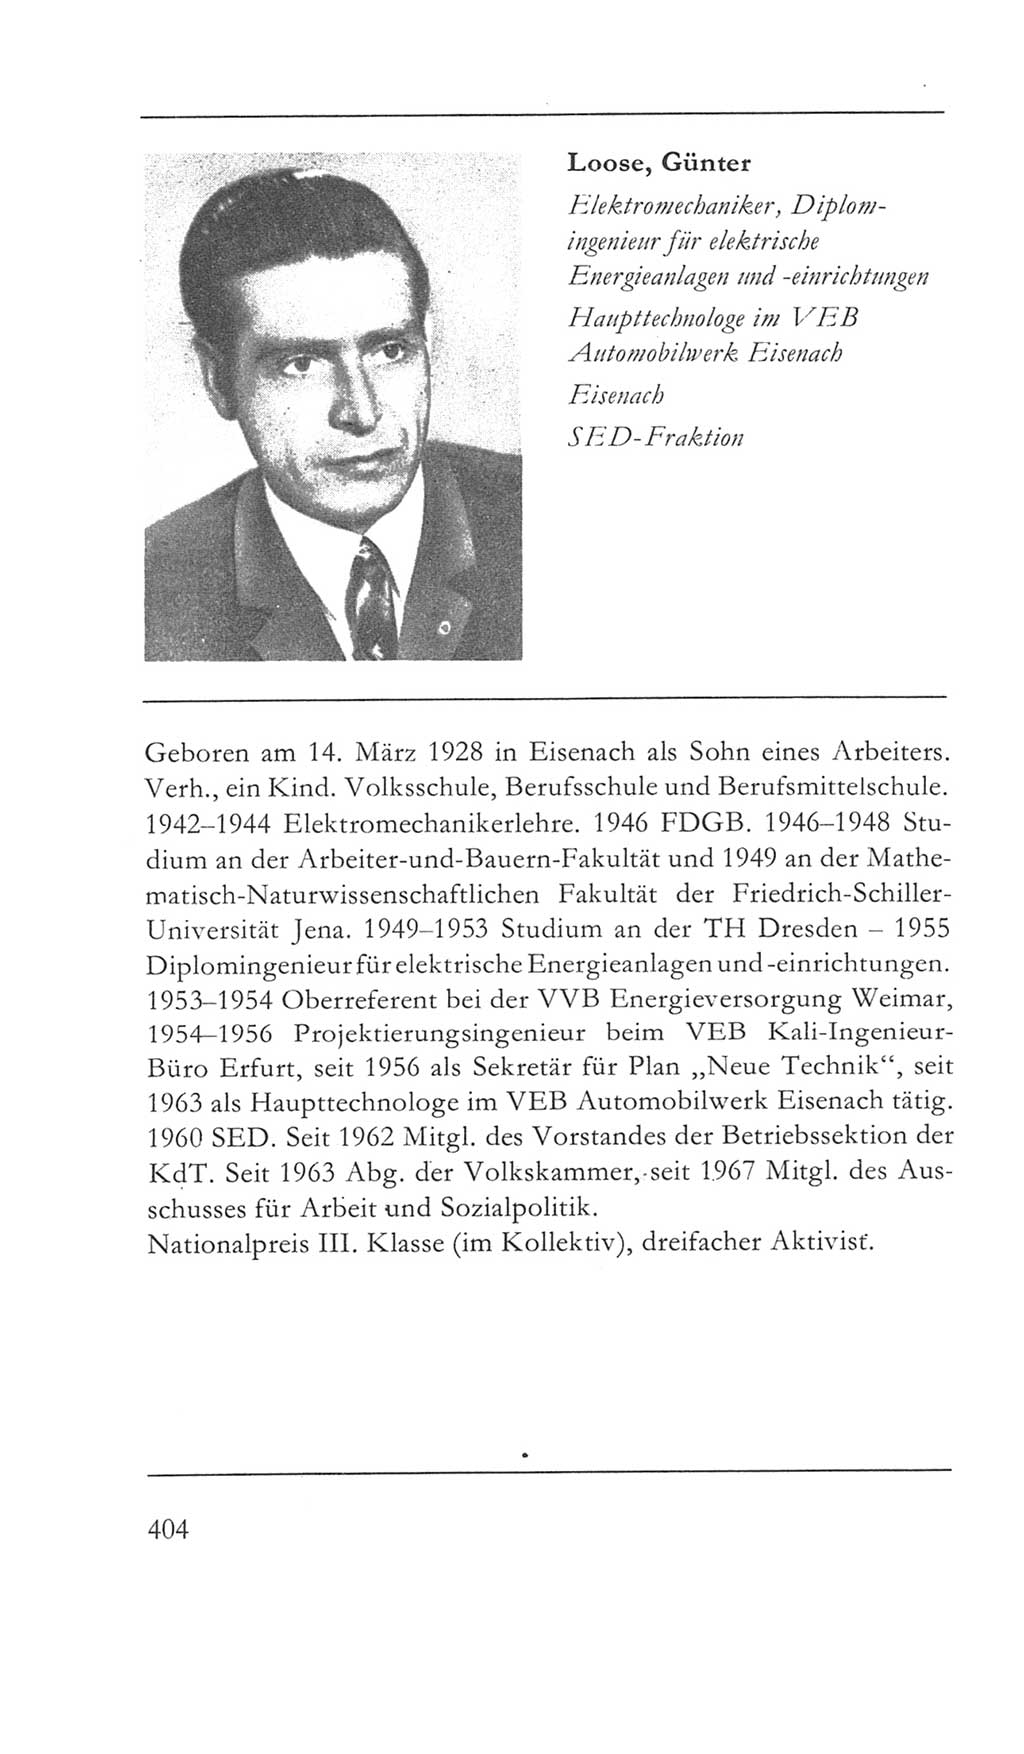 Volkskammer (VK) der Deutschen Demokratischen Republik (DDR) 5. Wahlperiode 1967-1971, Seite 404 (VK. DDR 5. WP. 1967-1971, S. 404)